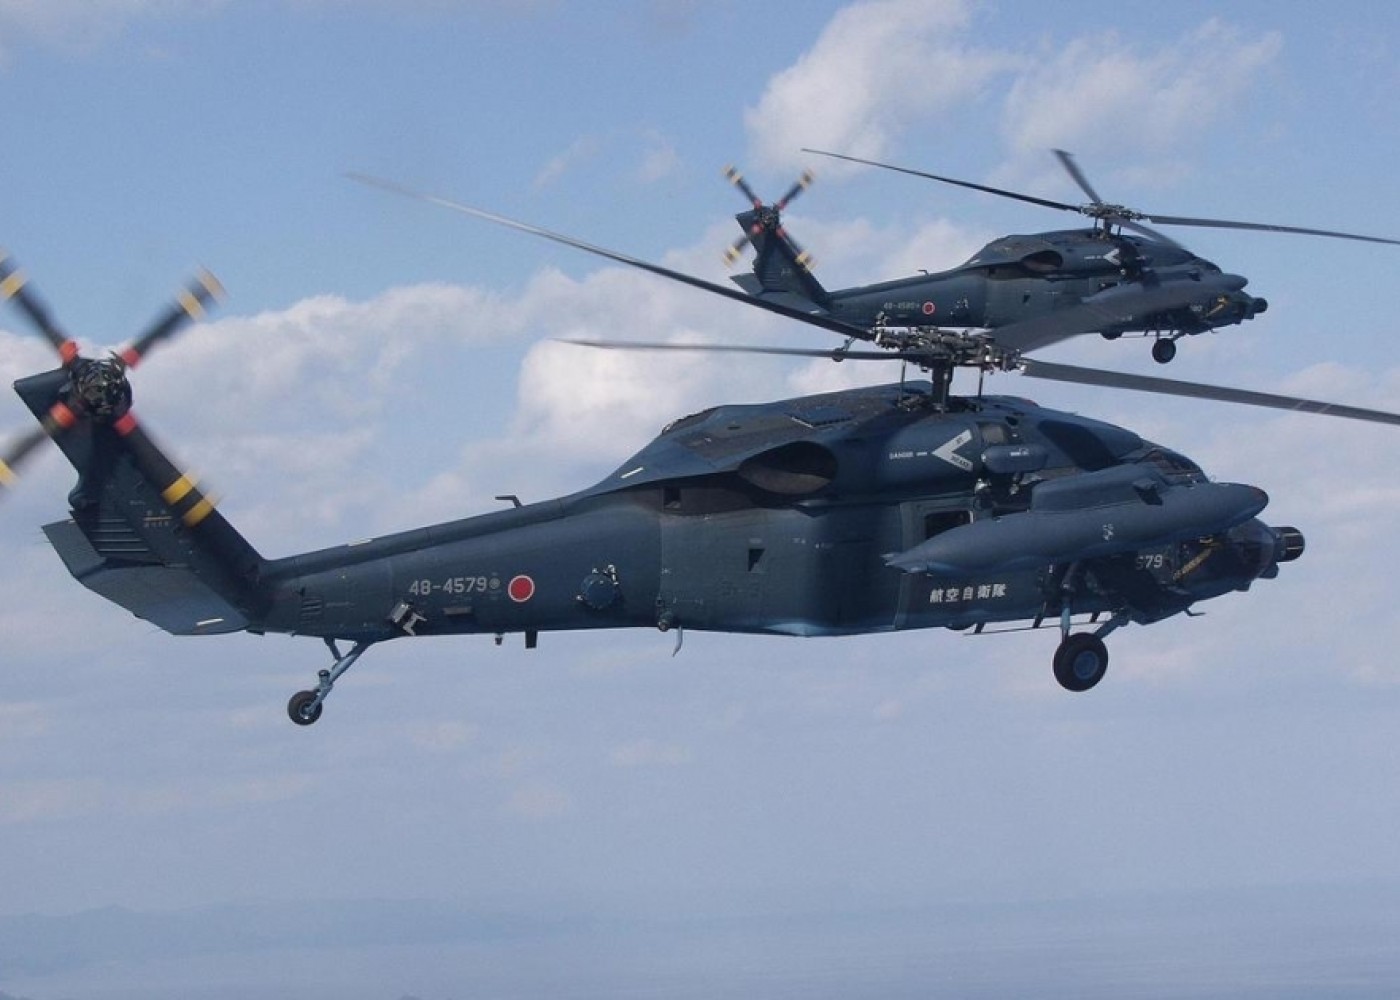 Yaponiyada hərbi helikopterlər qəzaya uğrayıb,ölən və itkin düşənlər var